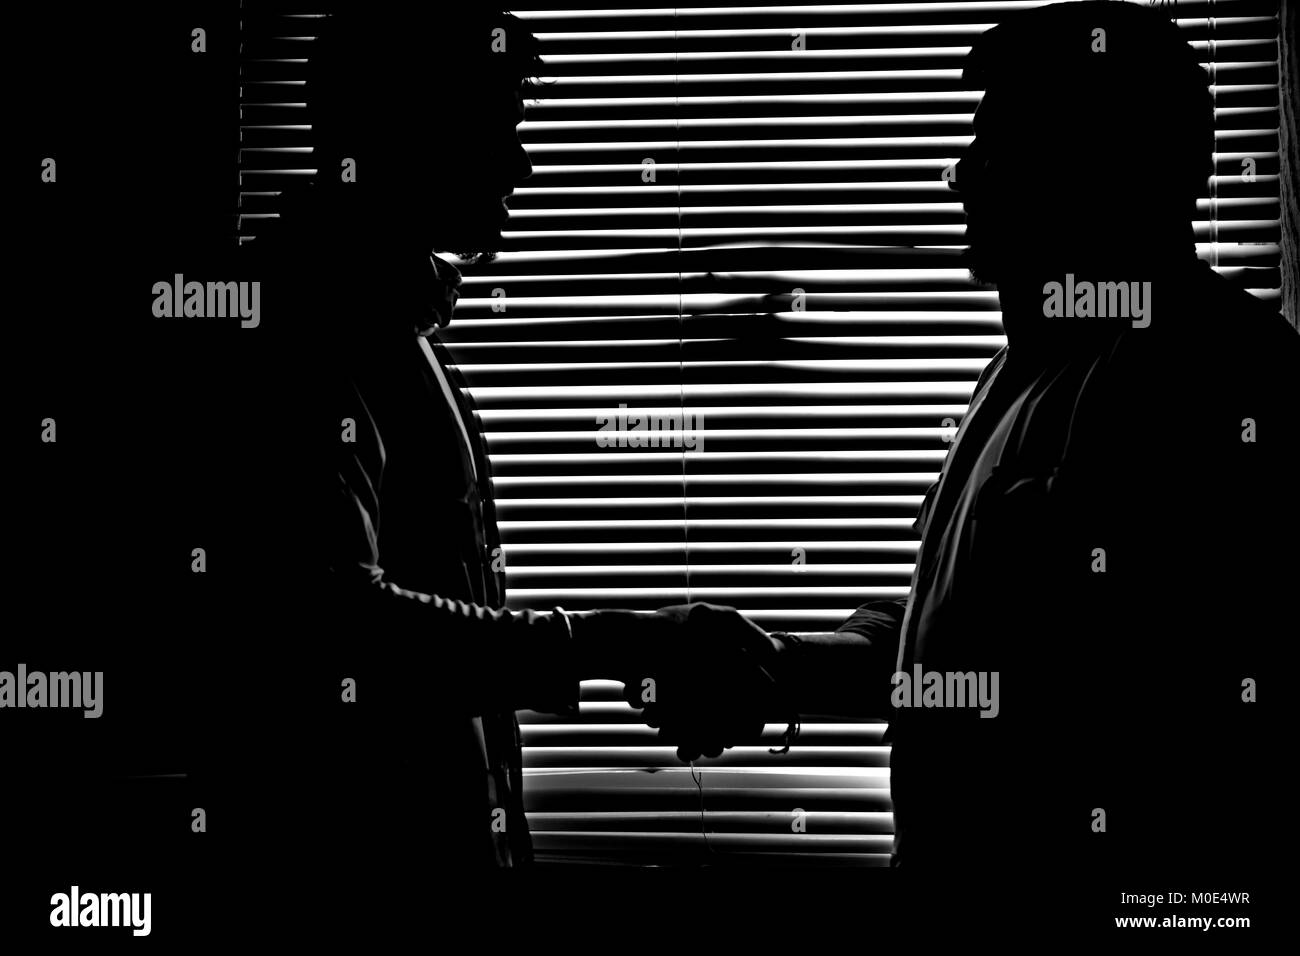 Patrón de rayas de fondo para el hombre y de Handshake silueta silueta oscura figura Foto de stock